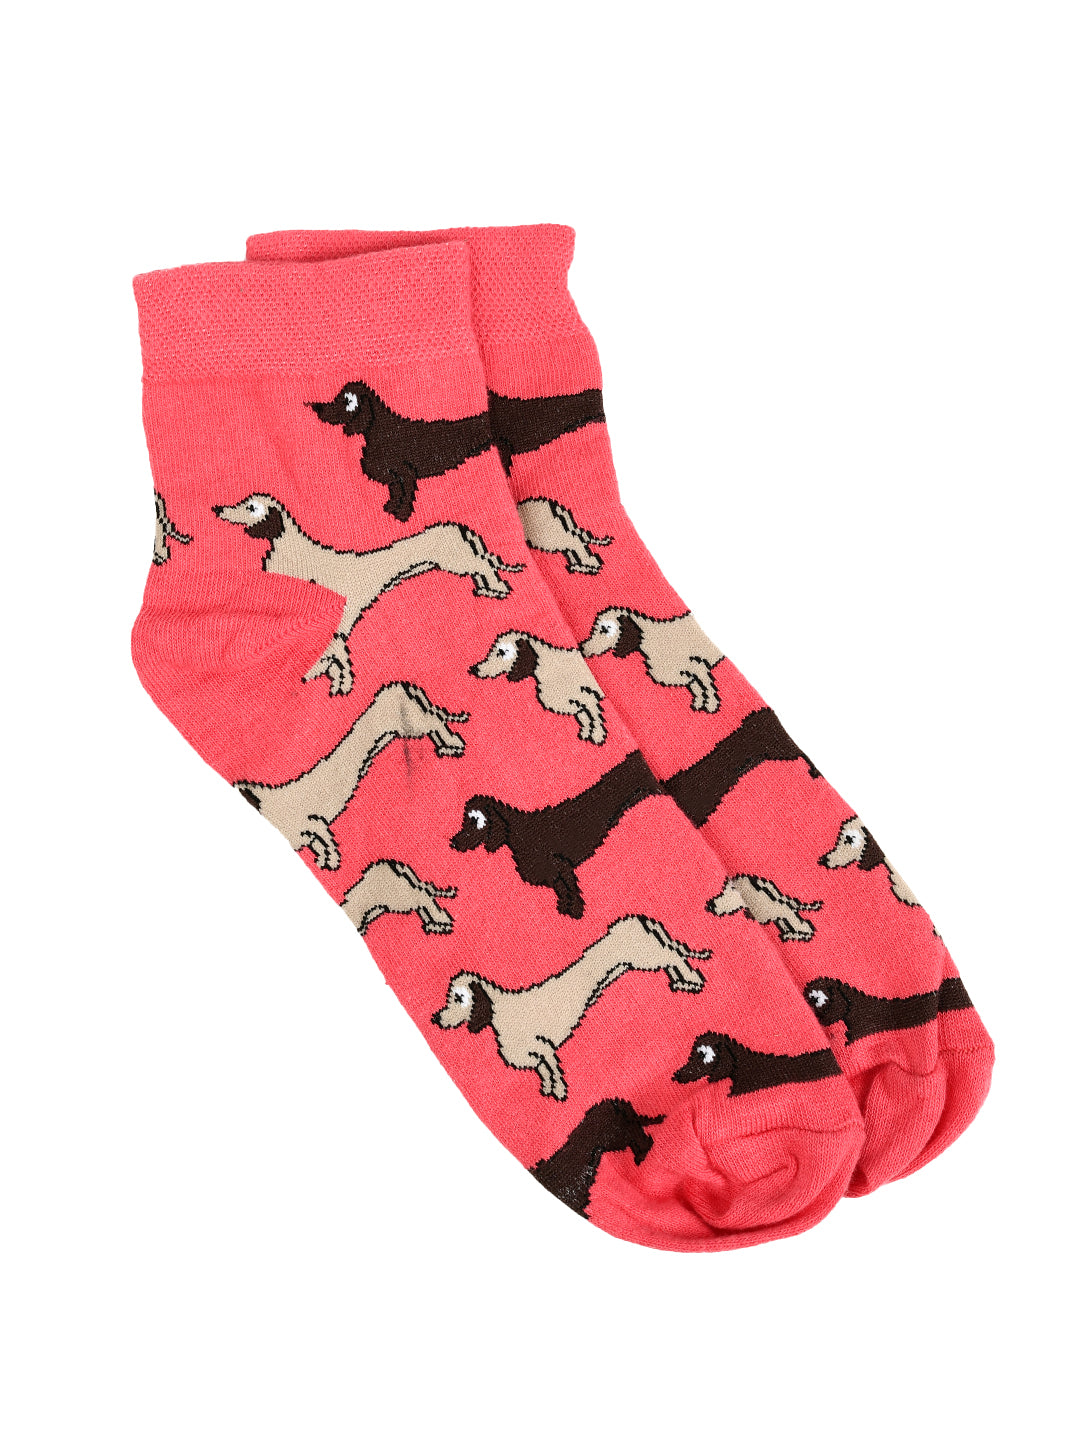 SWHF Organic Cotton Unisex Designer Socks Set (Ankle Length, Dog)